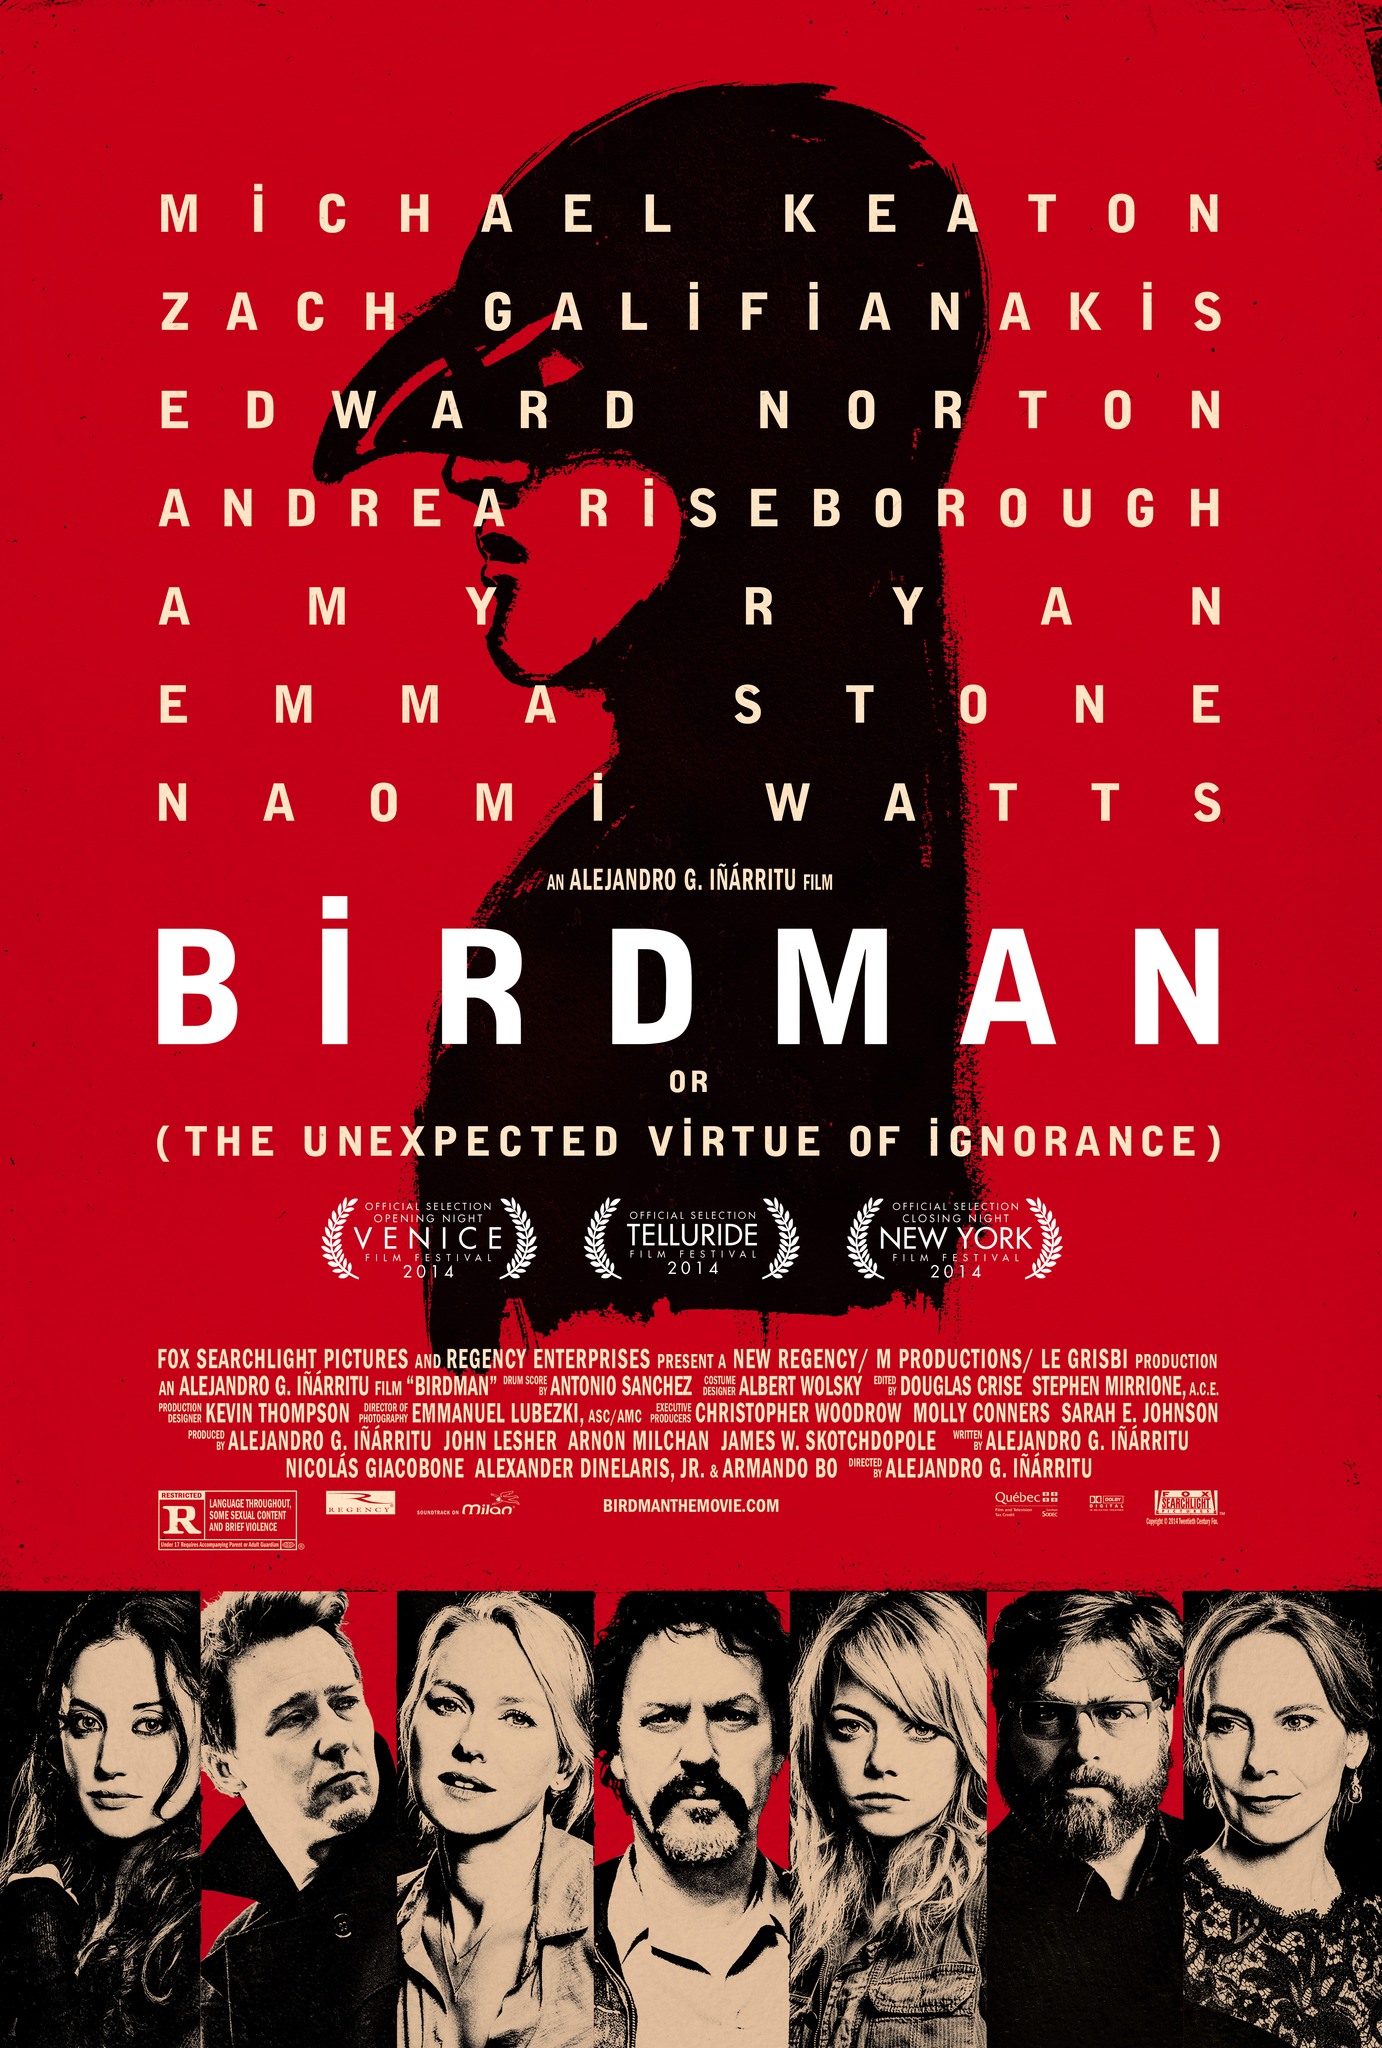 ดูหนังออนไลน์ฟรี Birdman (2014) เบิร์ดแมน มายาดาว หนังเต็มเรื่อง หนังมาสเตอร์ ดูหนังHD ดูหนังออนไลน์ ดูหนังใหม่